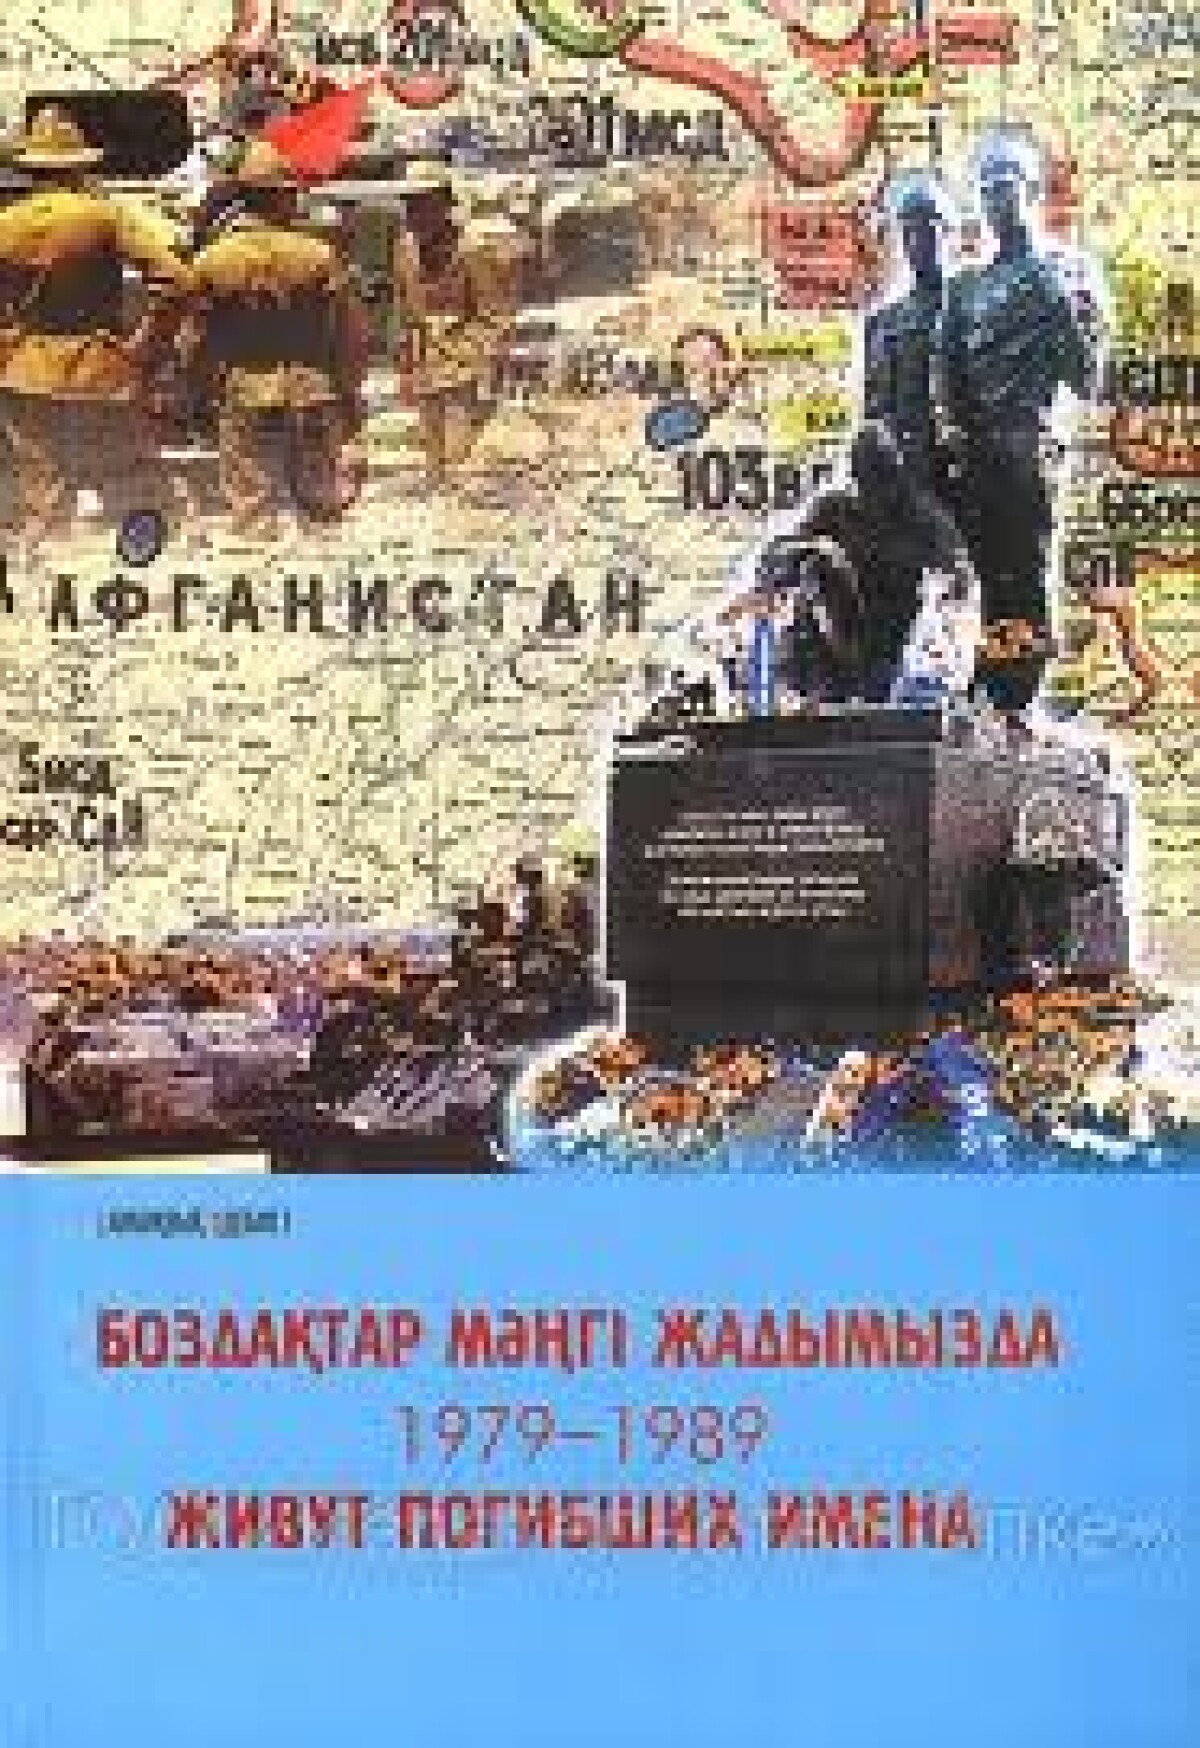 2006 жылы Астана қаласында «Боздақтар мәңгі жадымызда. 1979-1989» естелік кітабының таныстыруы рәсімі өтті - e-history.kz